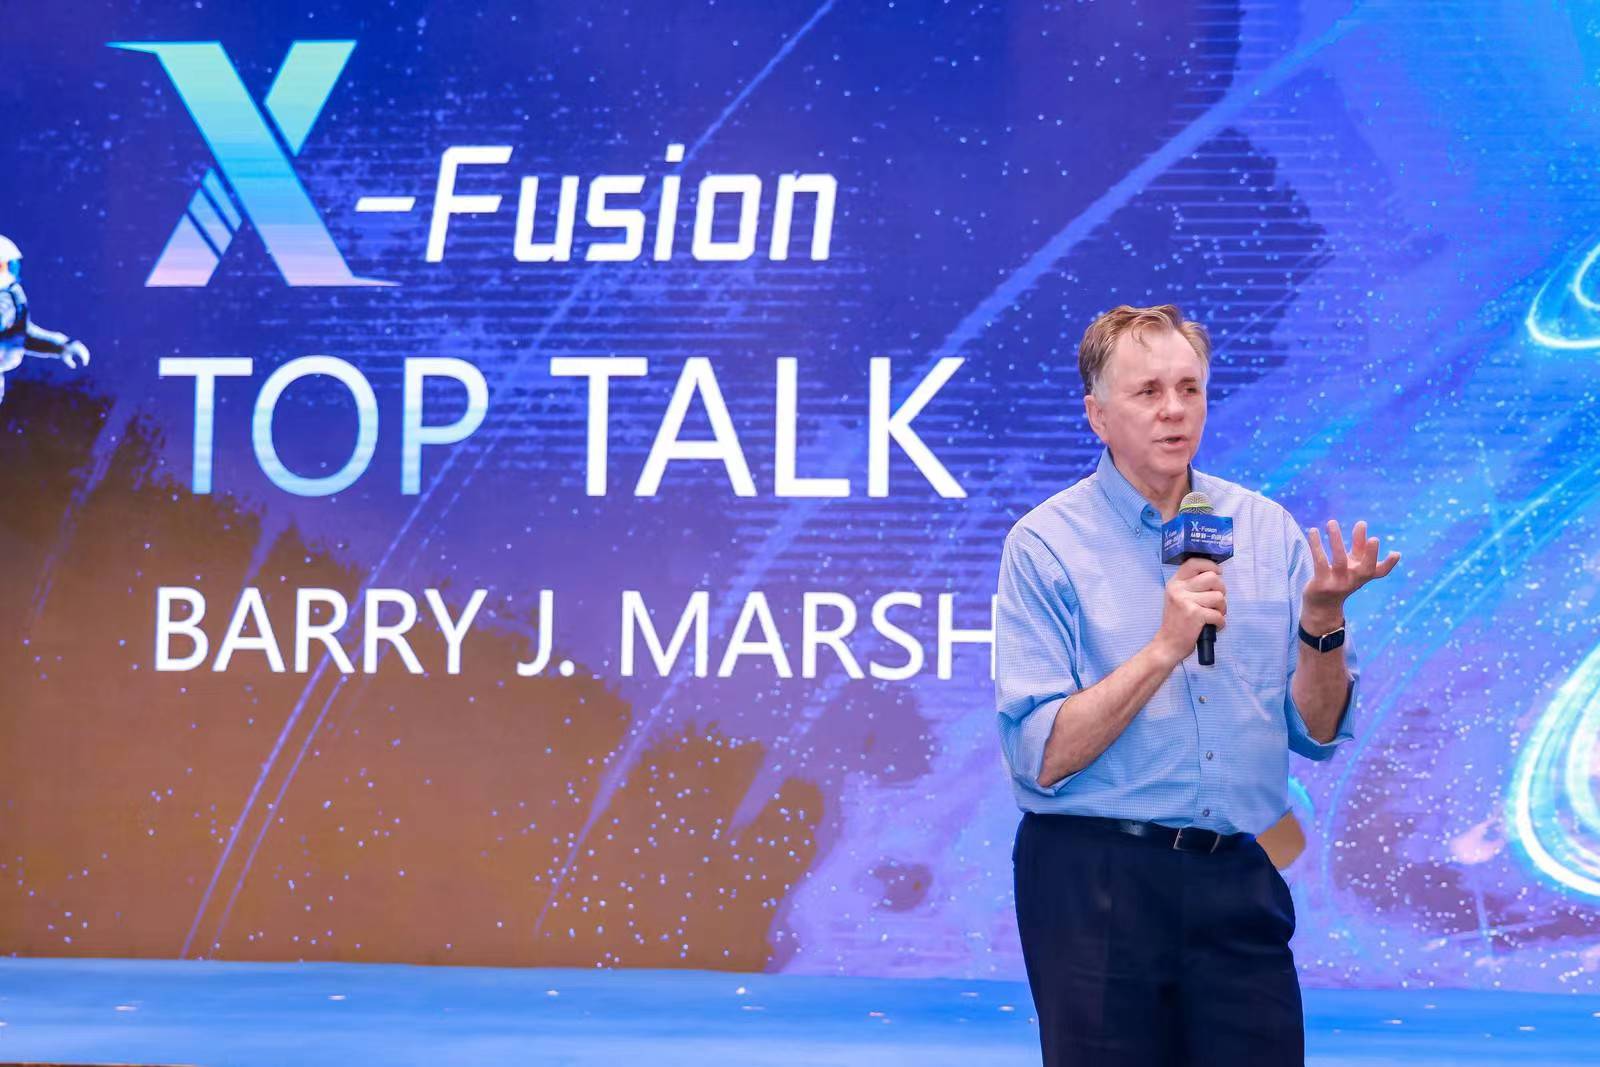 诺奖得主巴里·马歇尔在X-Fusion现场进行分享.jpg